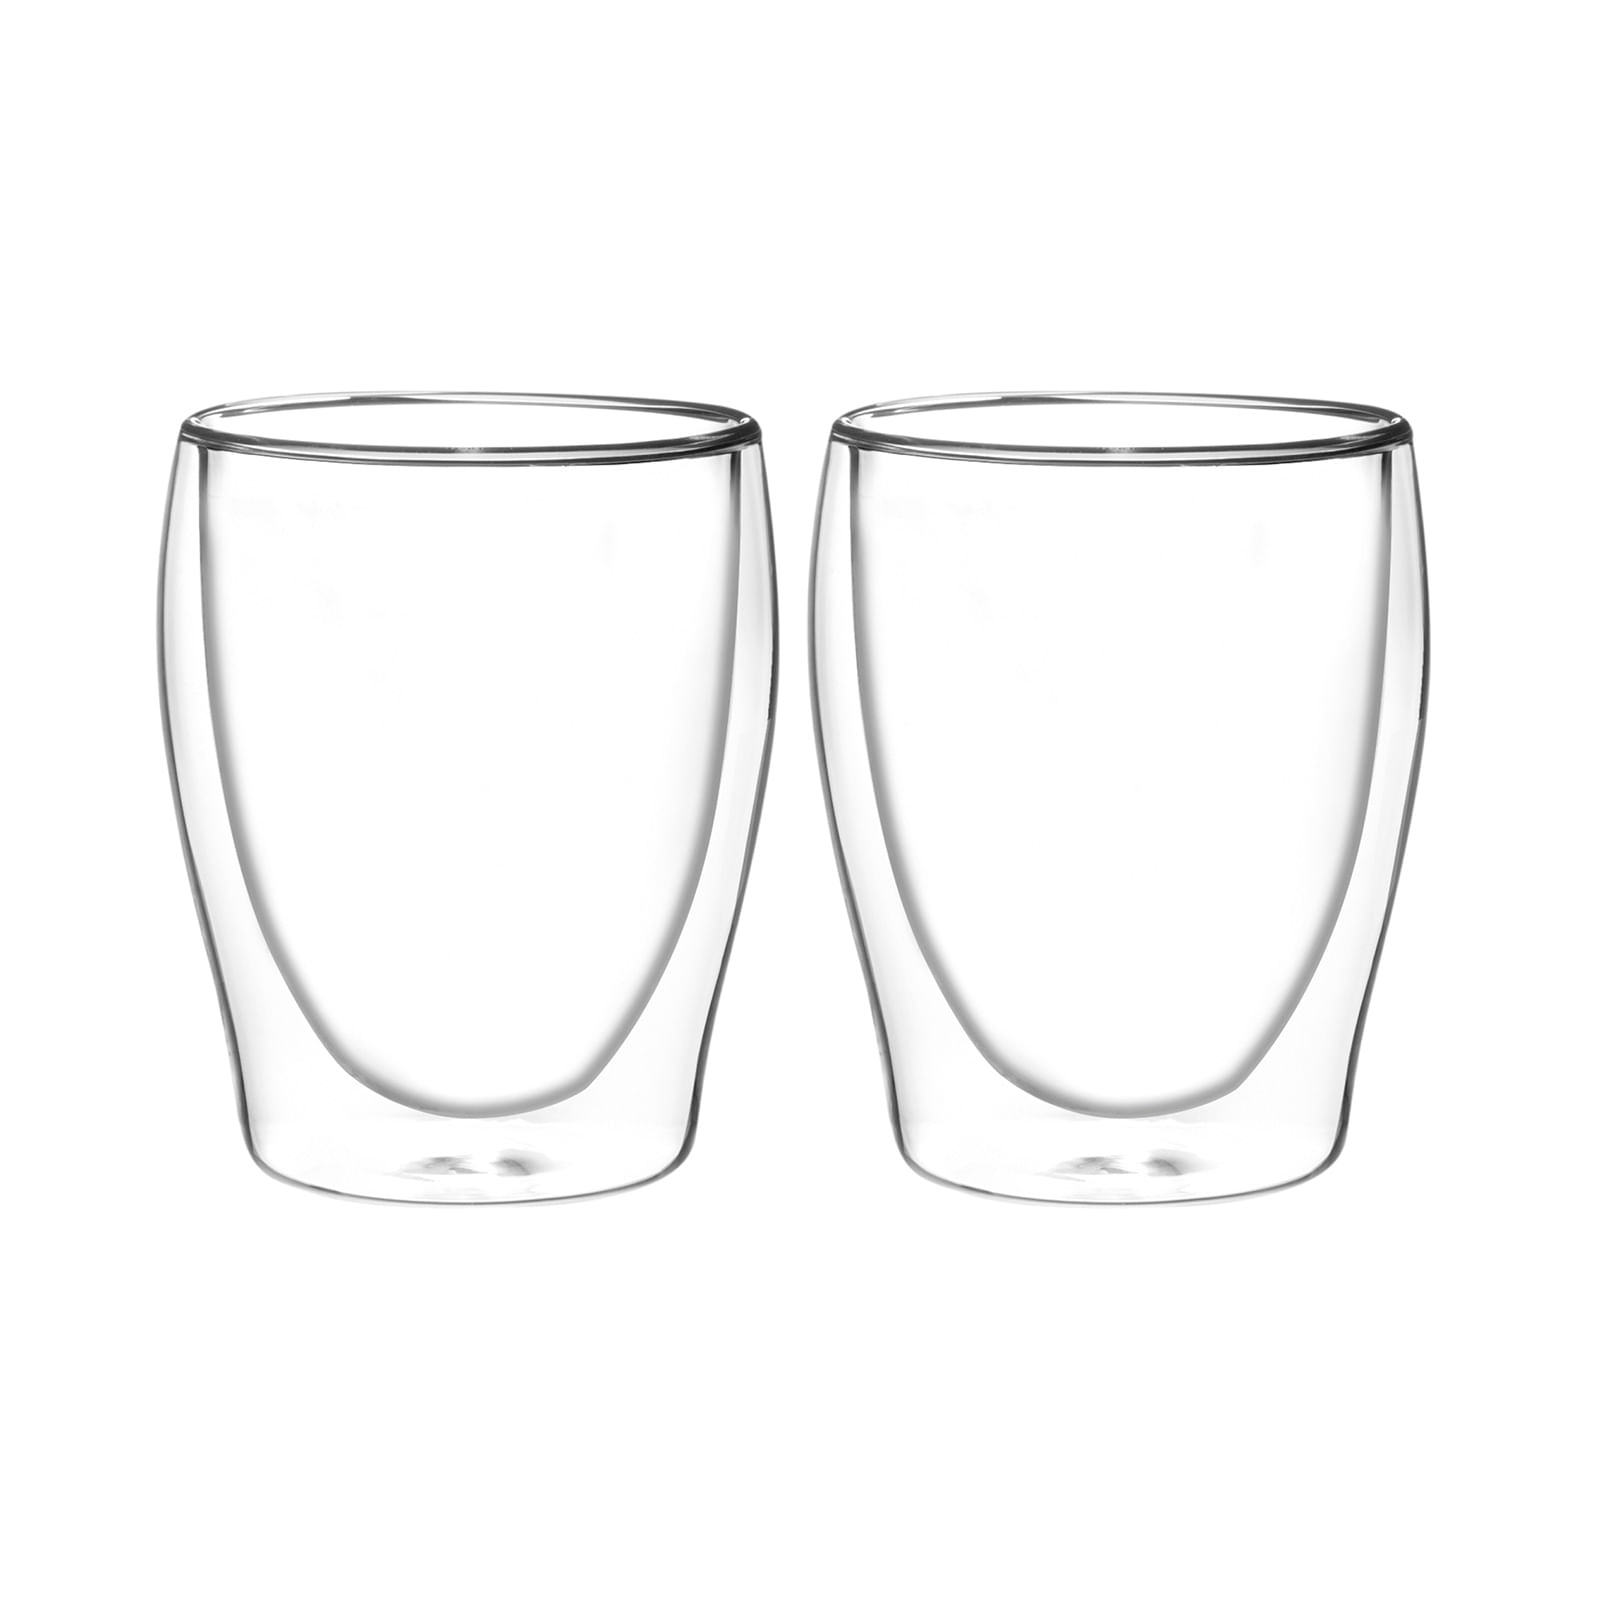 Set vasos de cristal doble pared 250 ml